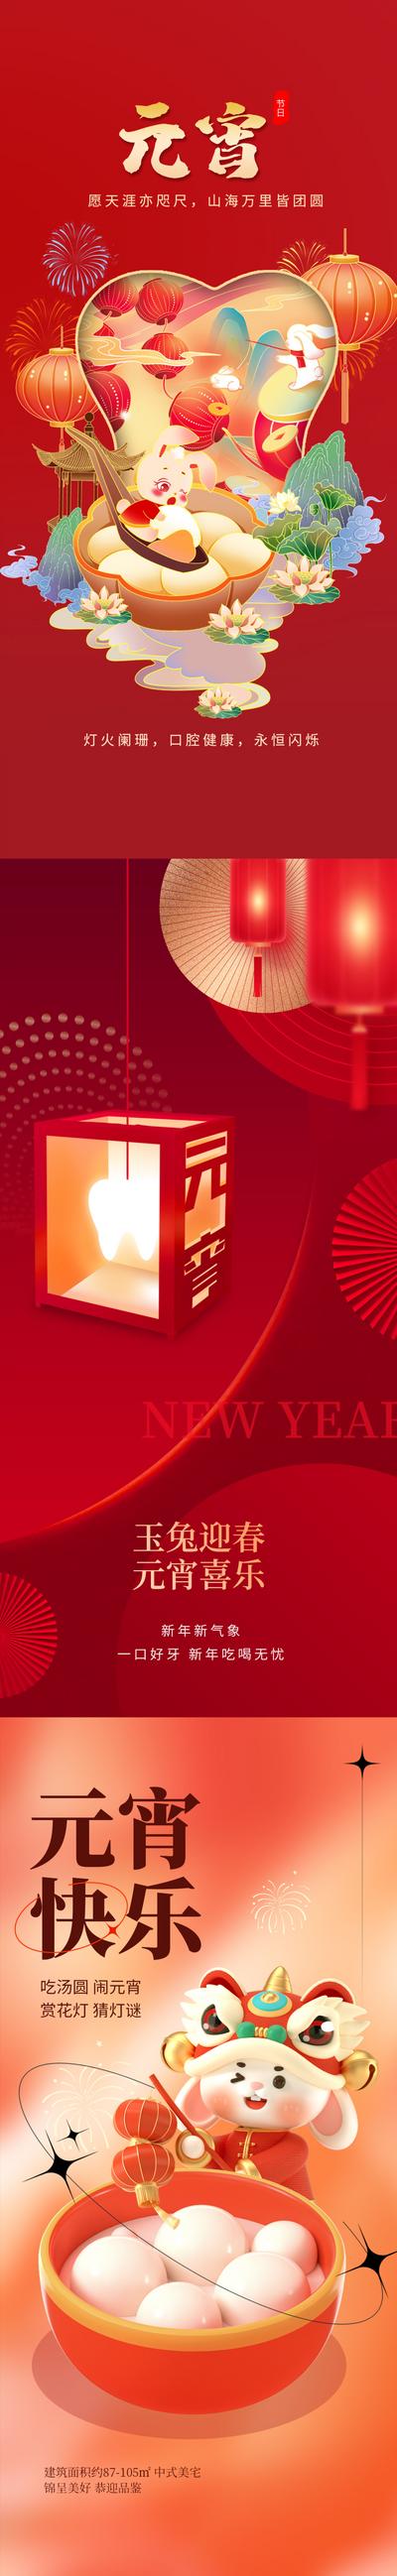 南门网 海报 中国传统节日 房地产 元宵节 正月十五 灯笼 猜灯谜 烟花